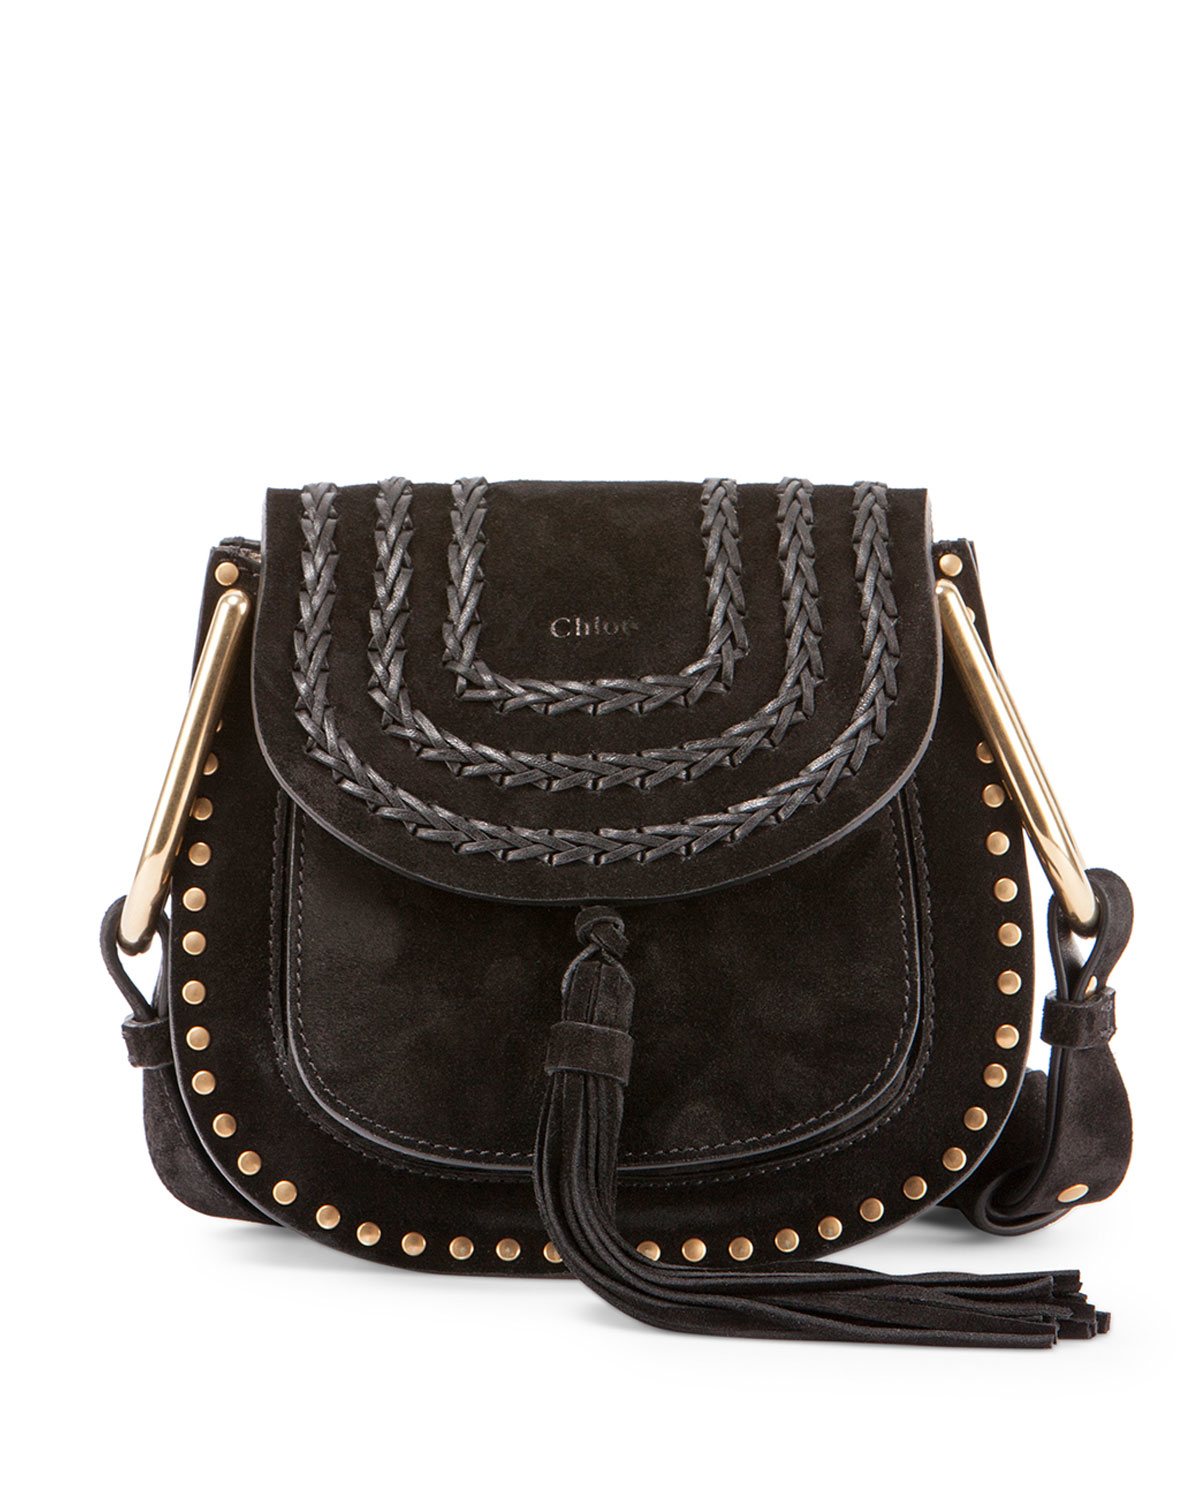 Chlo Hudson Mini Suede Shoulder Bag in Black | Lyst